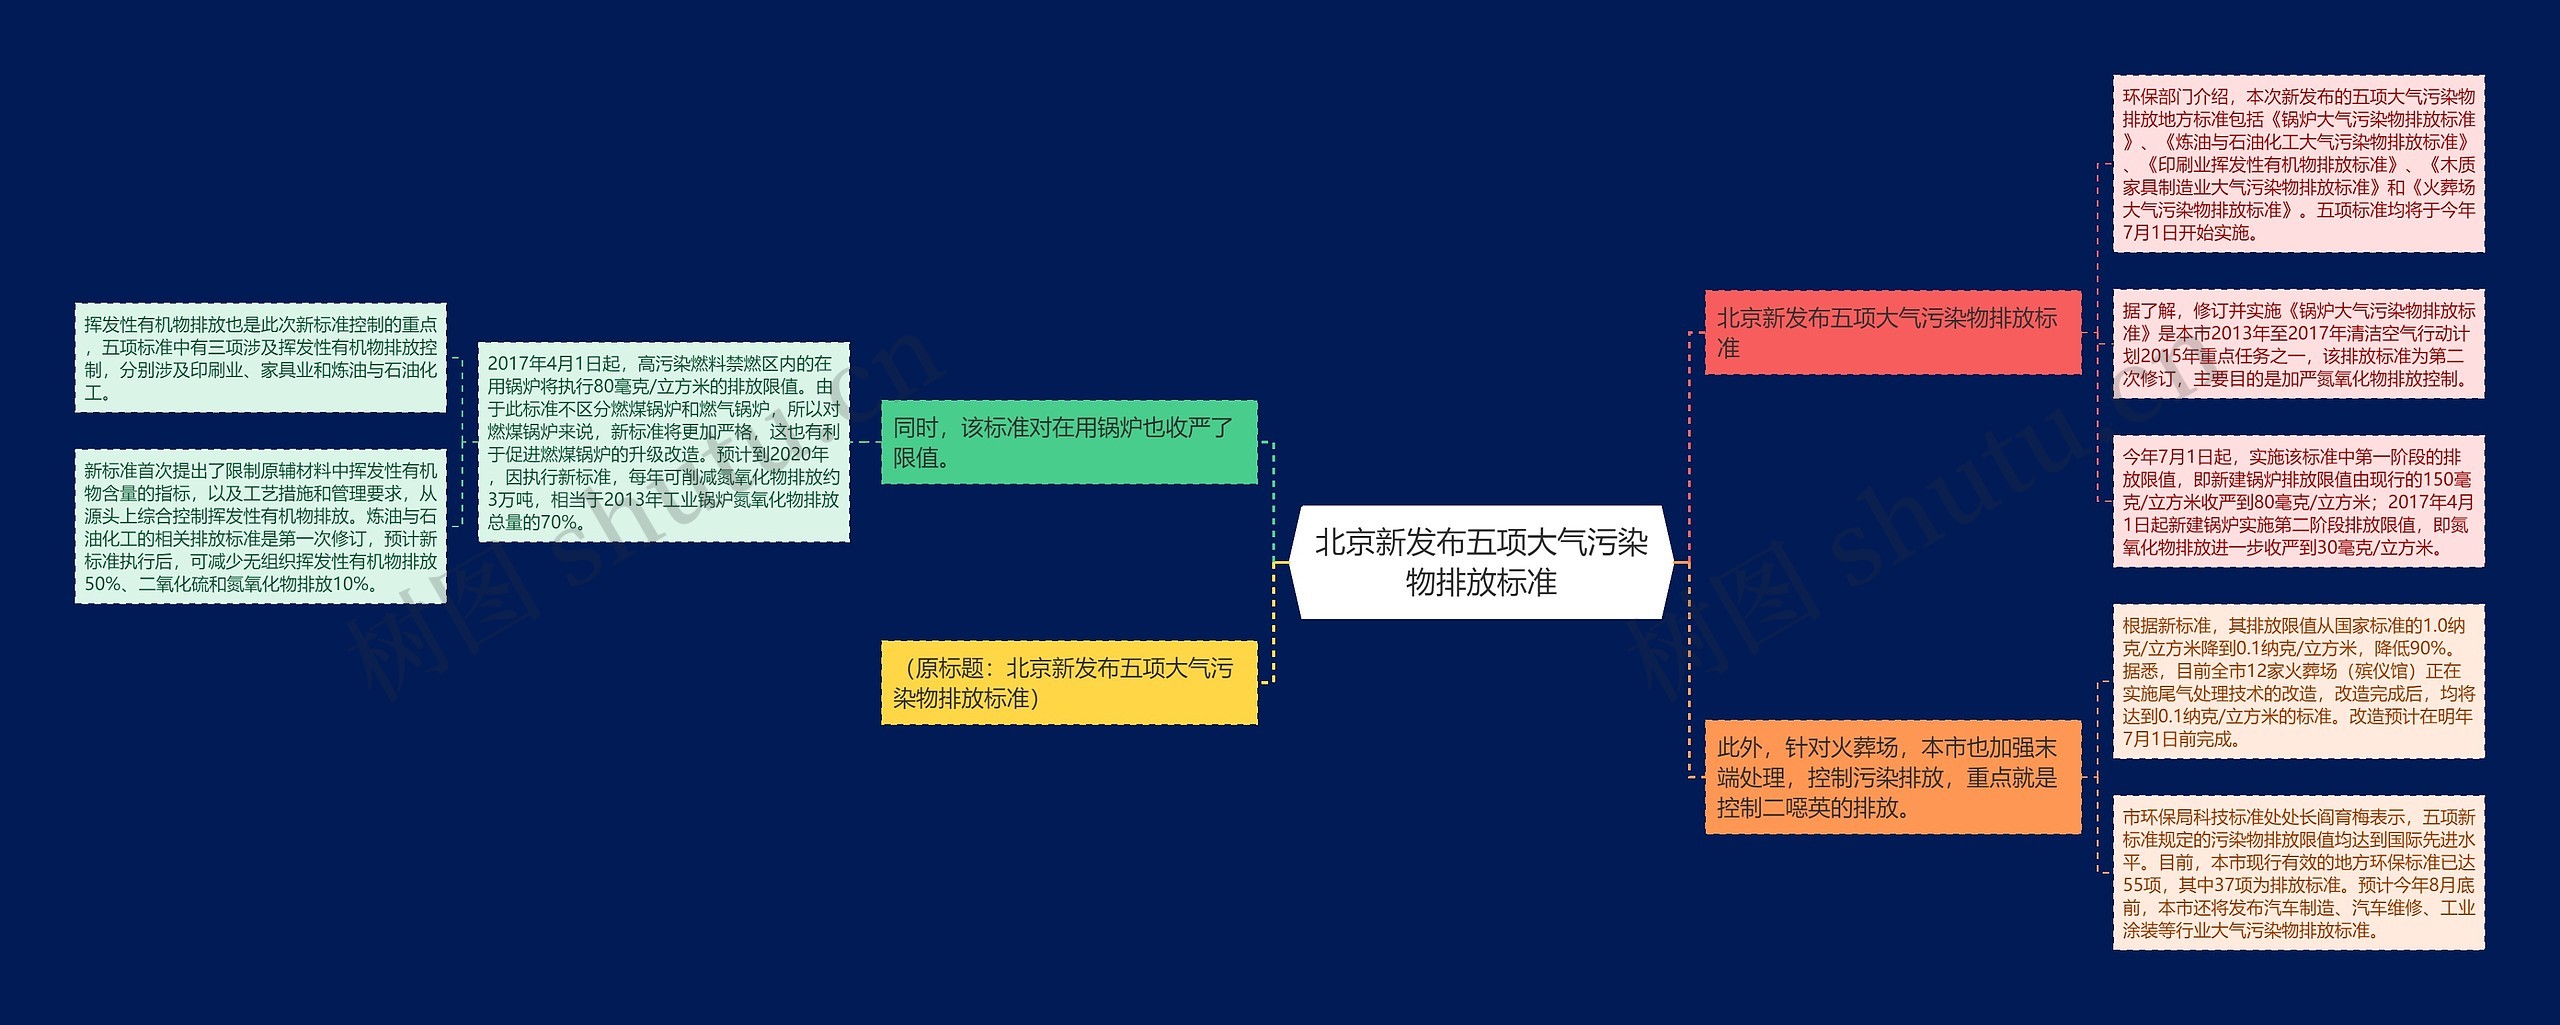 北京新发布五项大气污染物排放标准思维导图